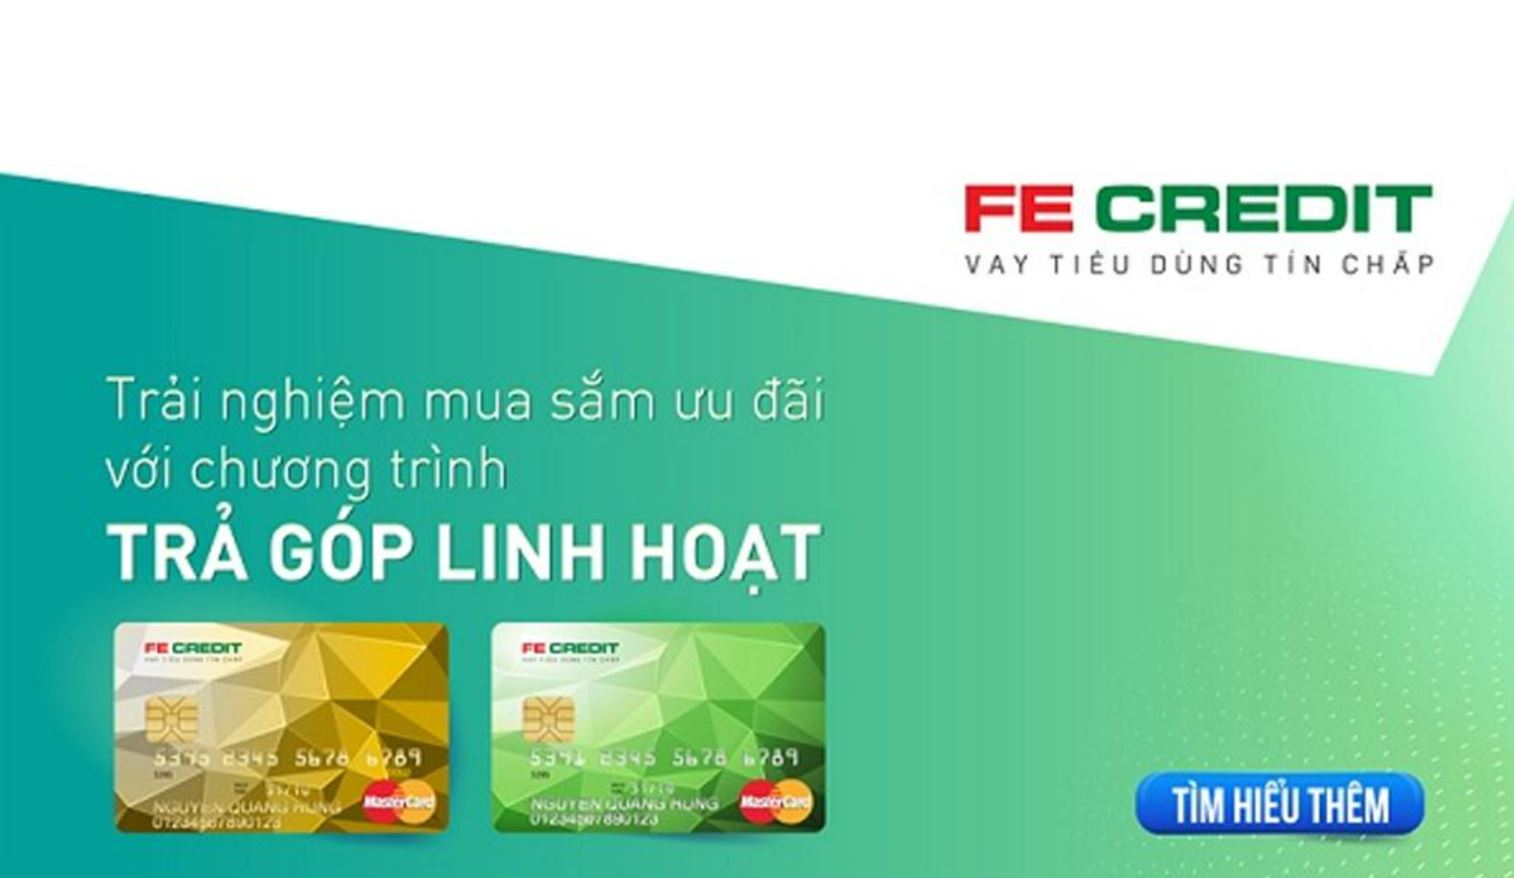 Hủy thẻ tín dụng FE